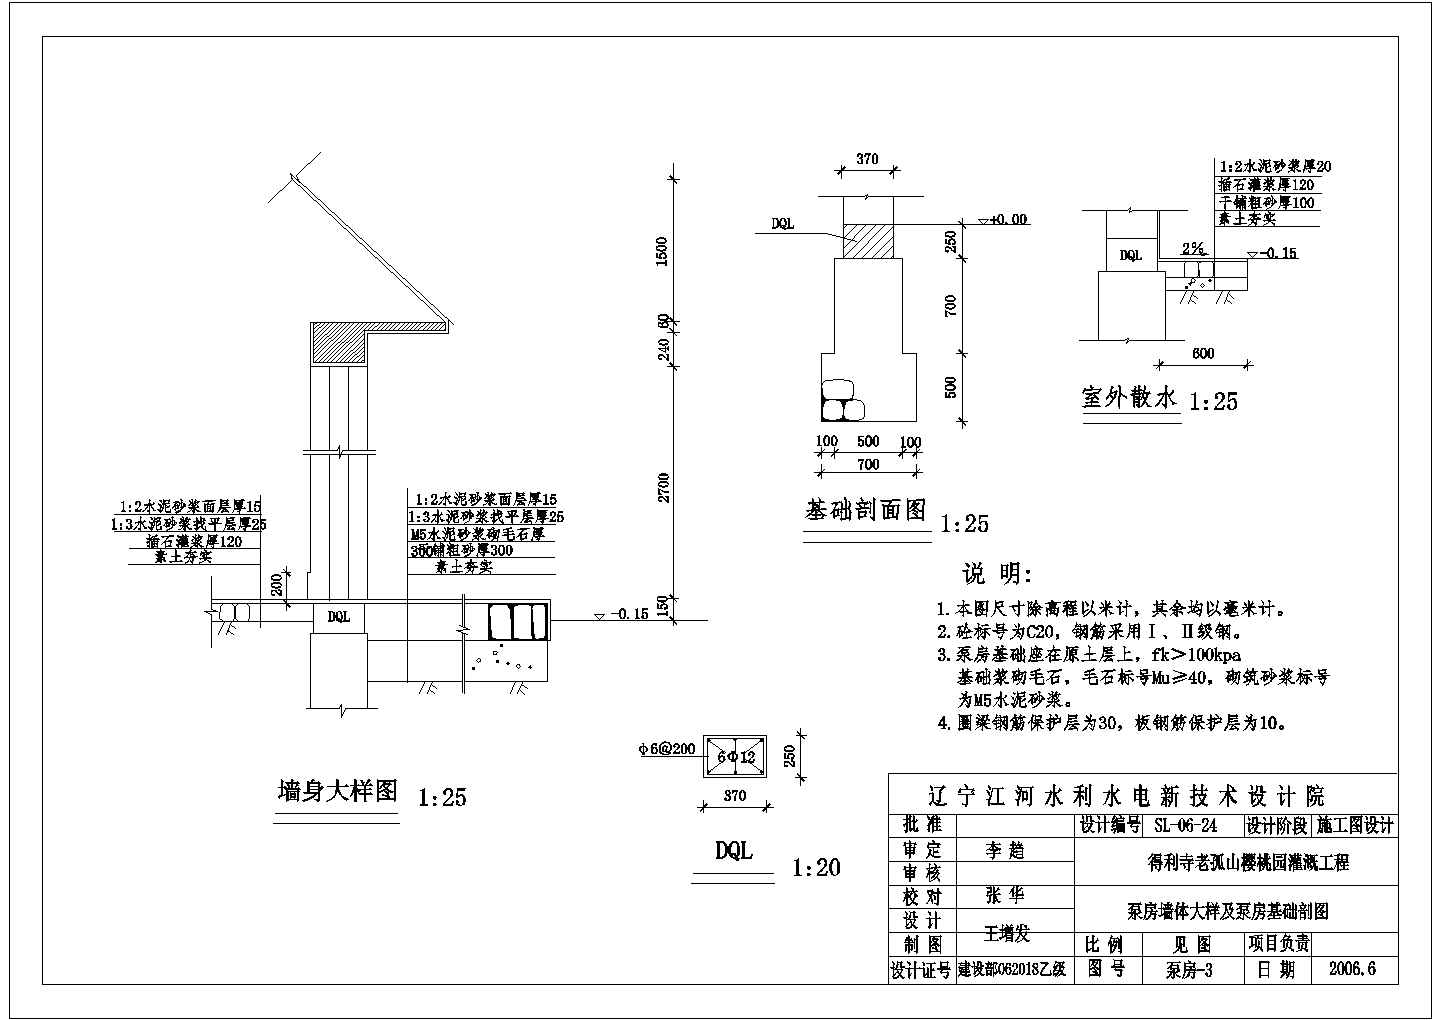 技施阶段得利寺老孤山樱桃园灌溉工程方塘泵房结构布置图